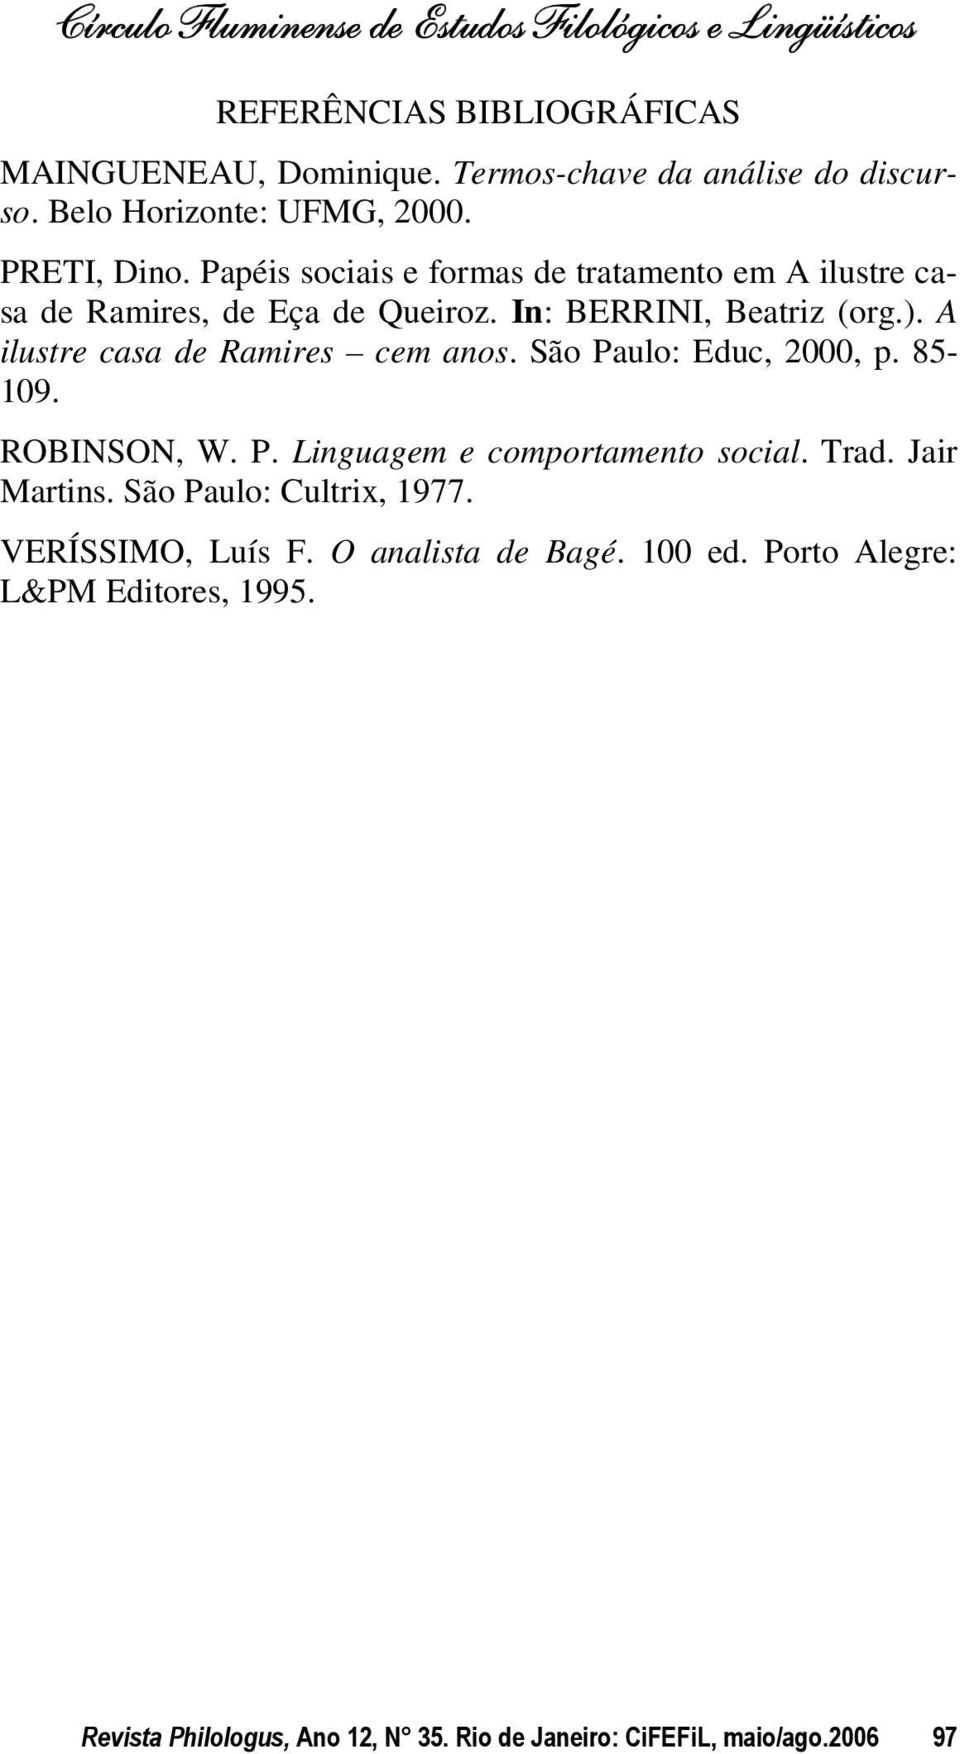 A ilustre casa de Ramires cem anos. São Paulo: Educ, 2000, p. 85-109. ROBINSON, W. P. Linguagem e comportamento social. Trad. Jair artins.